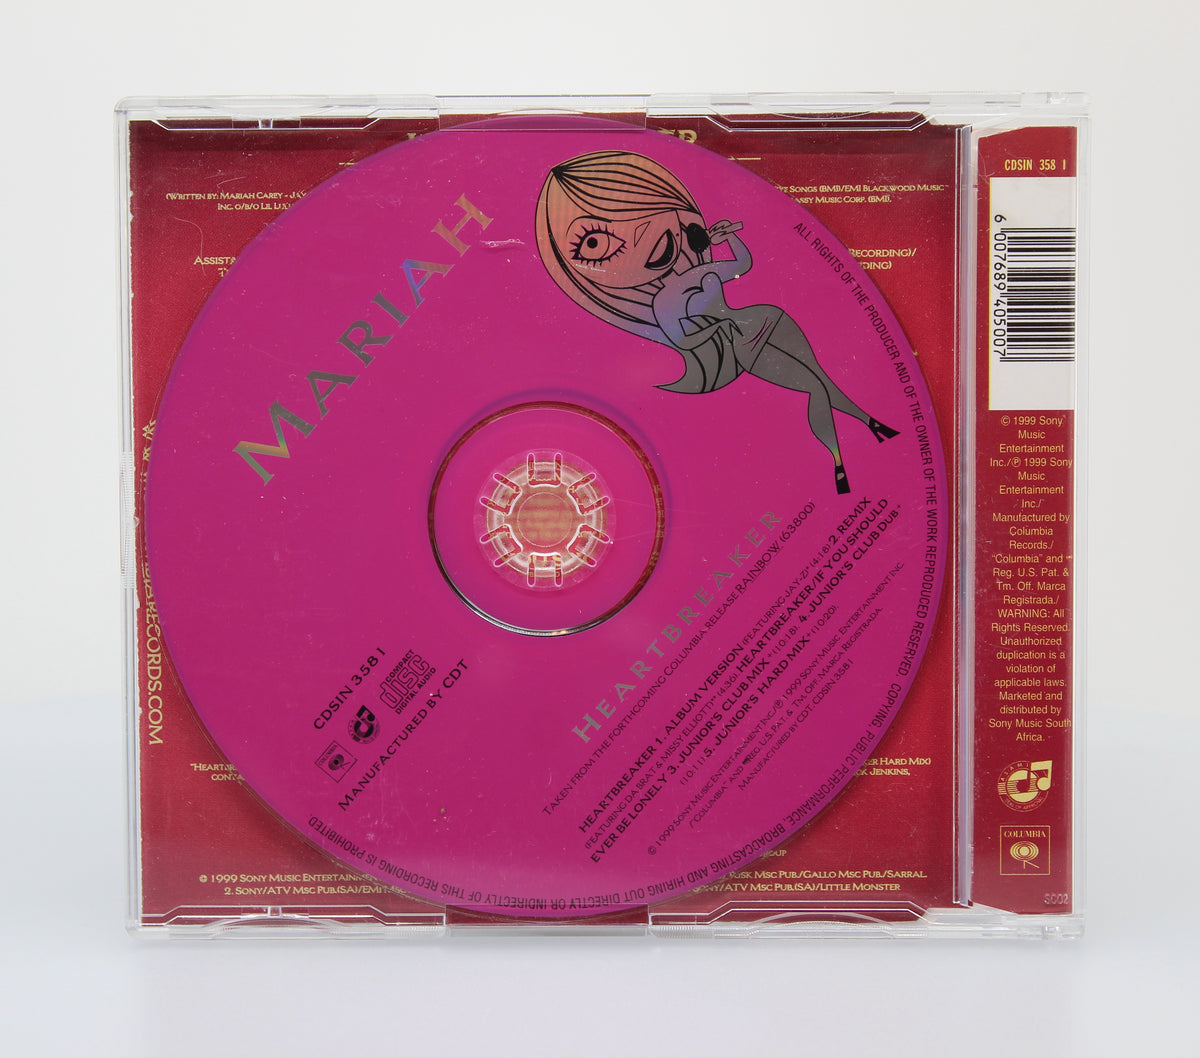 Mariah Carey – Heartbreaker, CD Maxi, South Africa 1999 (CD 590)